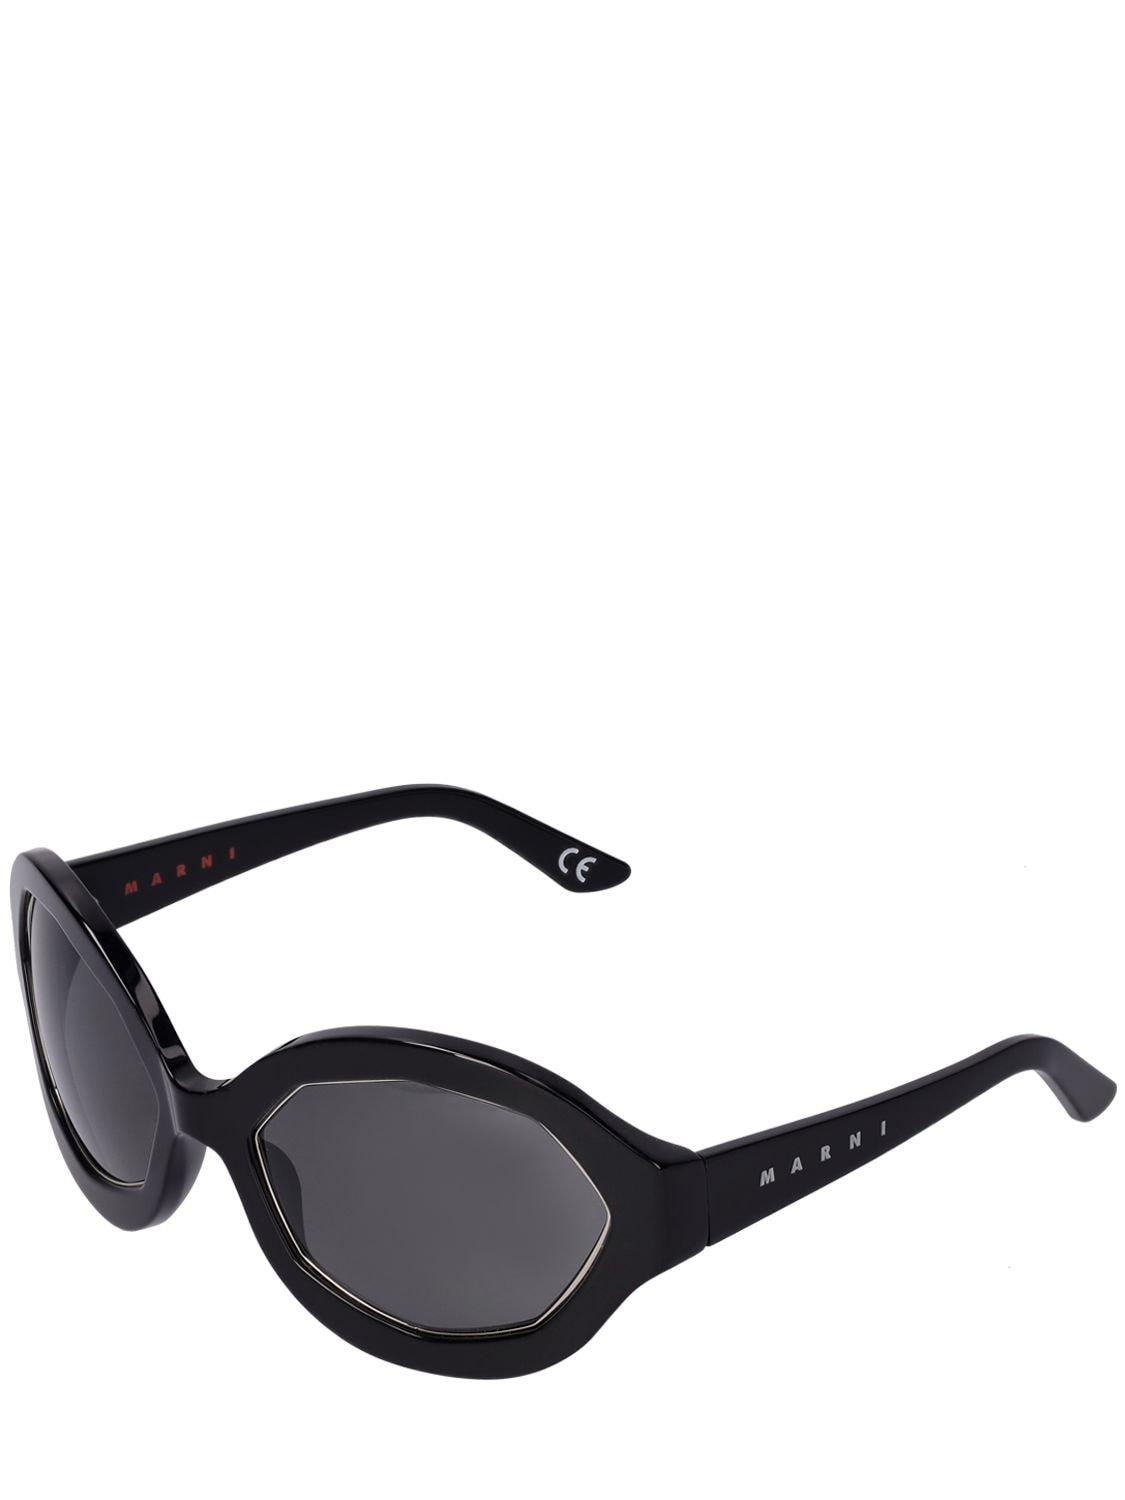 Womens Sunglasses Marni Sunglasses Marni Sunglasses in Black 